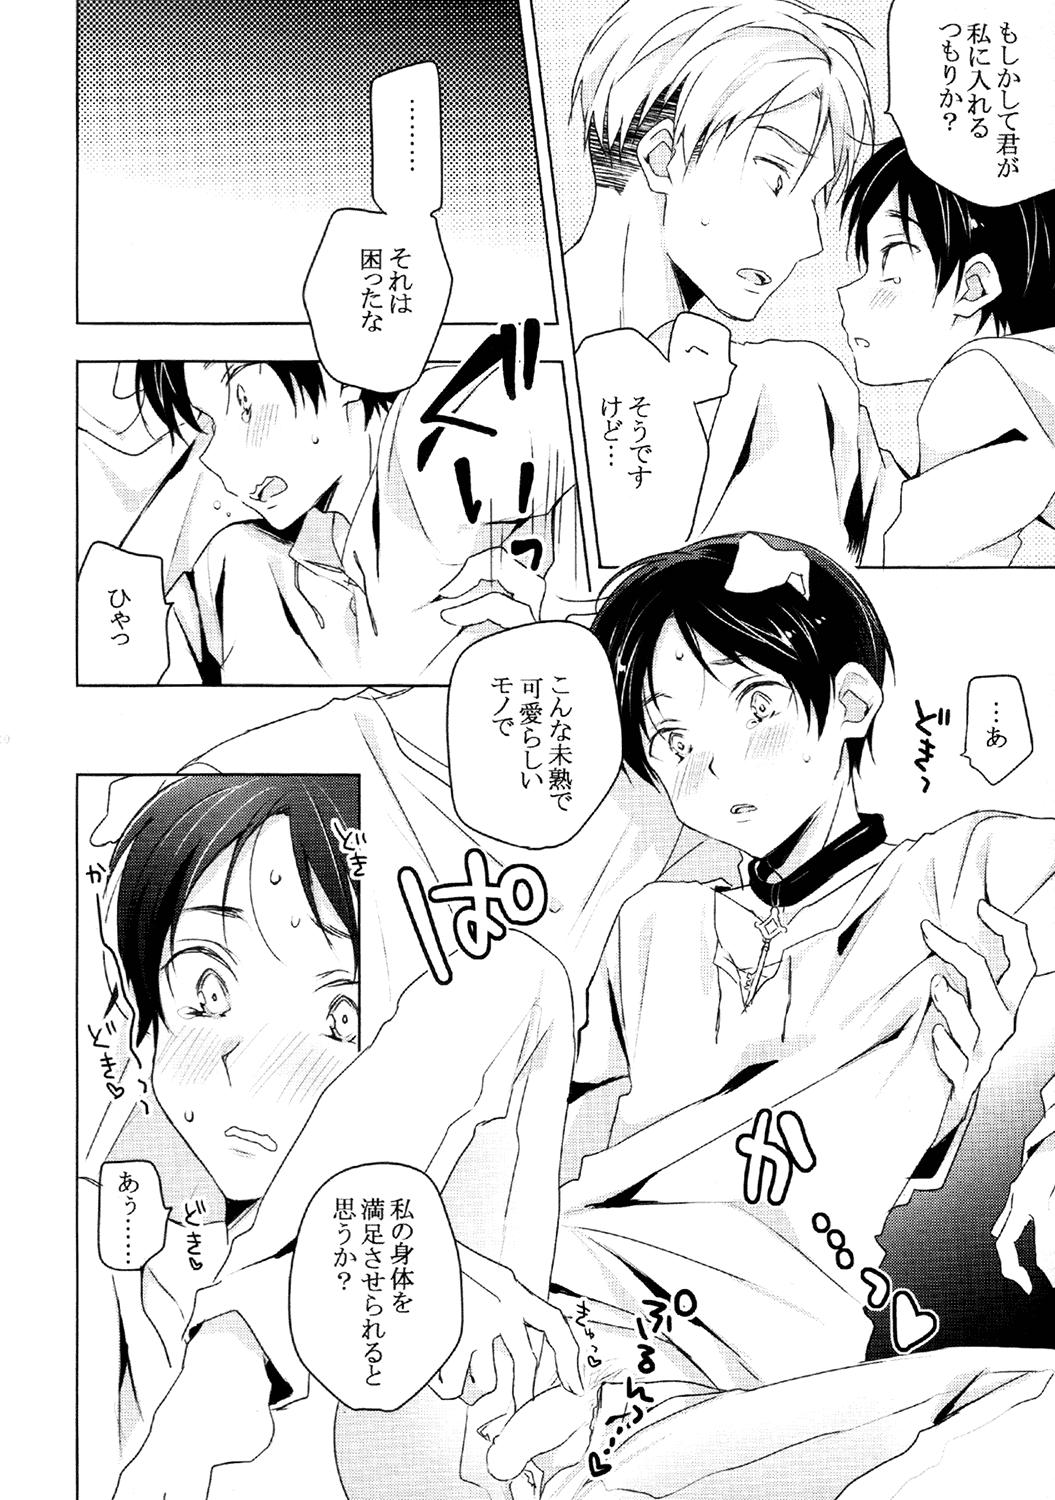 Closeup (HaruCC19) [hey you! (Non)] Ere-kun (Inu) wa Kyou mo Setsunai (Shingeki no Kyojin) - Shingeki no kyojin Puba - Page 7